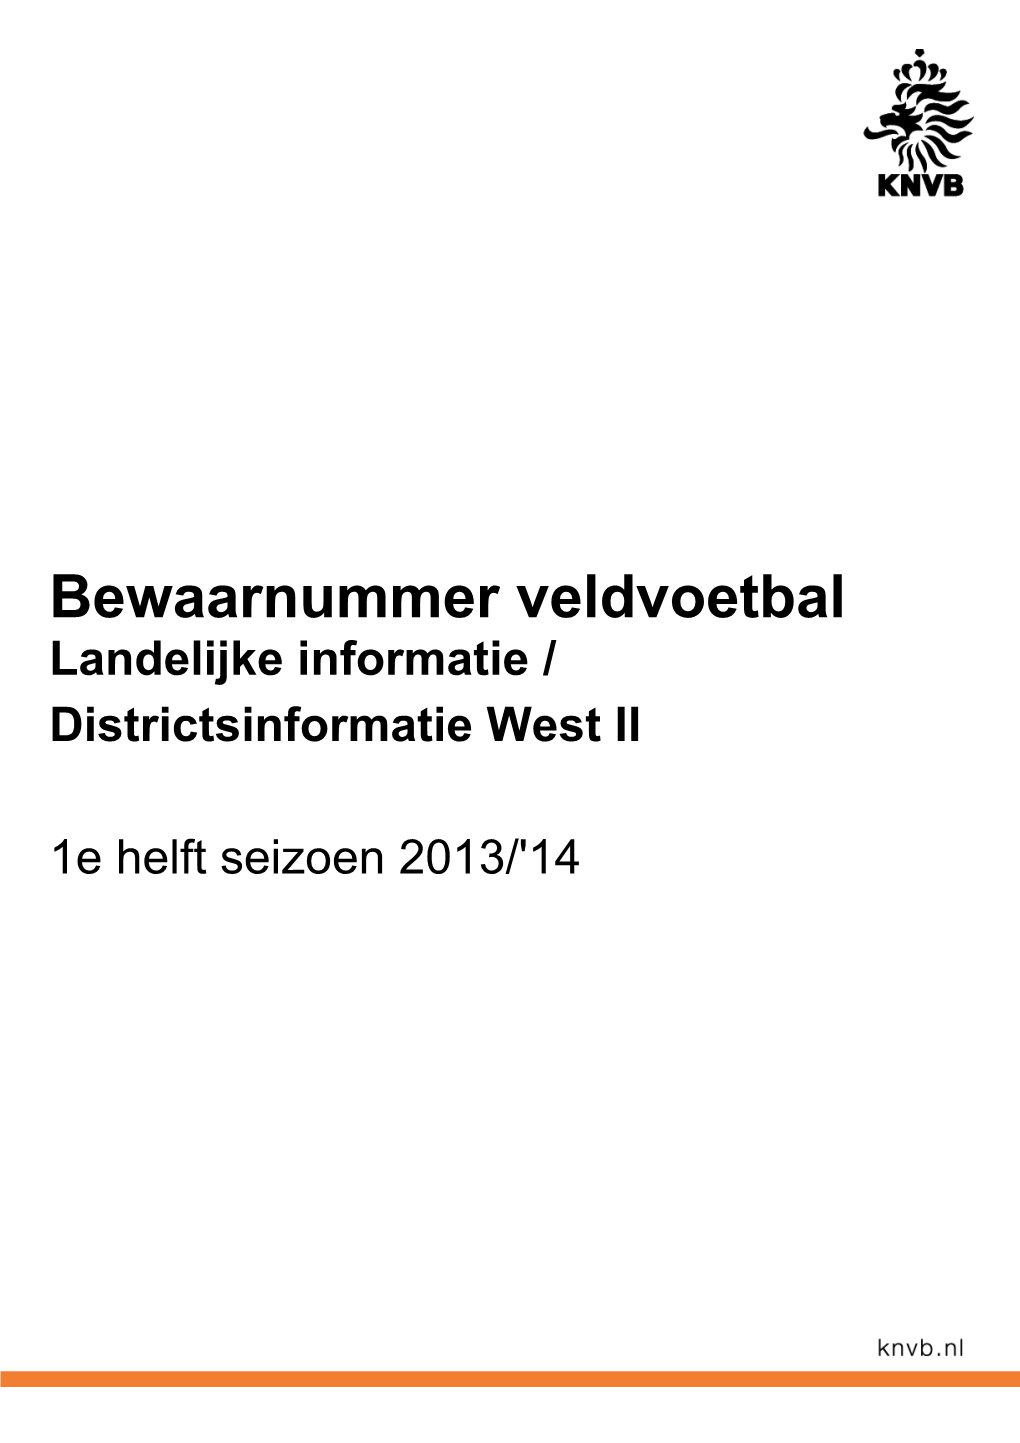 Bewaarnummer Veldvoetbal Landelijke Informatie / Districtsinformatie West II